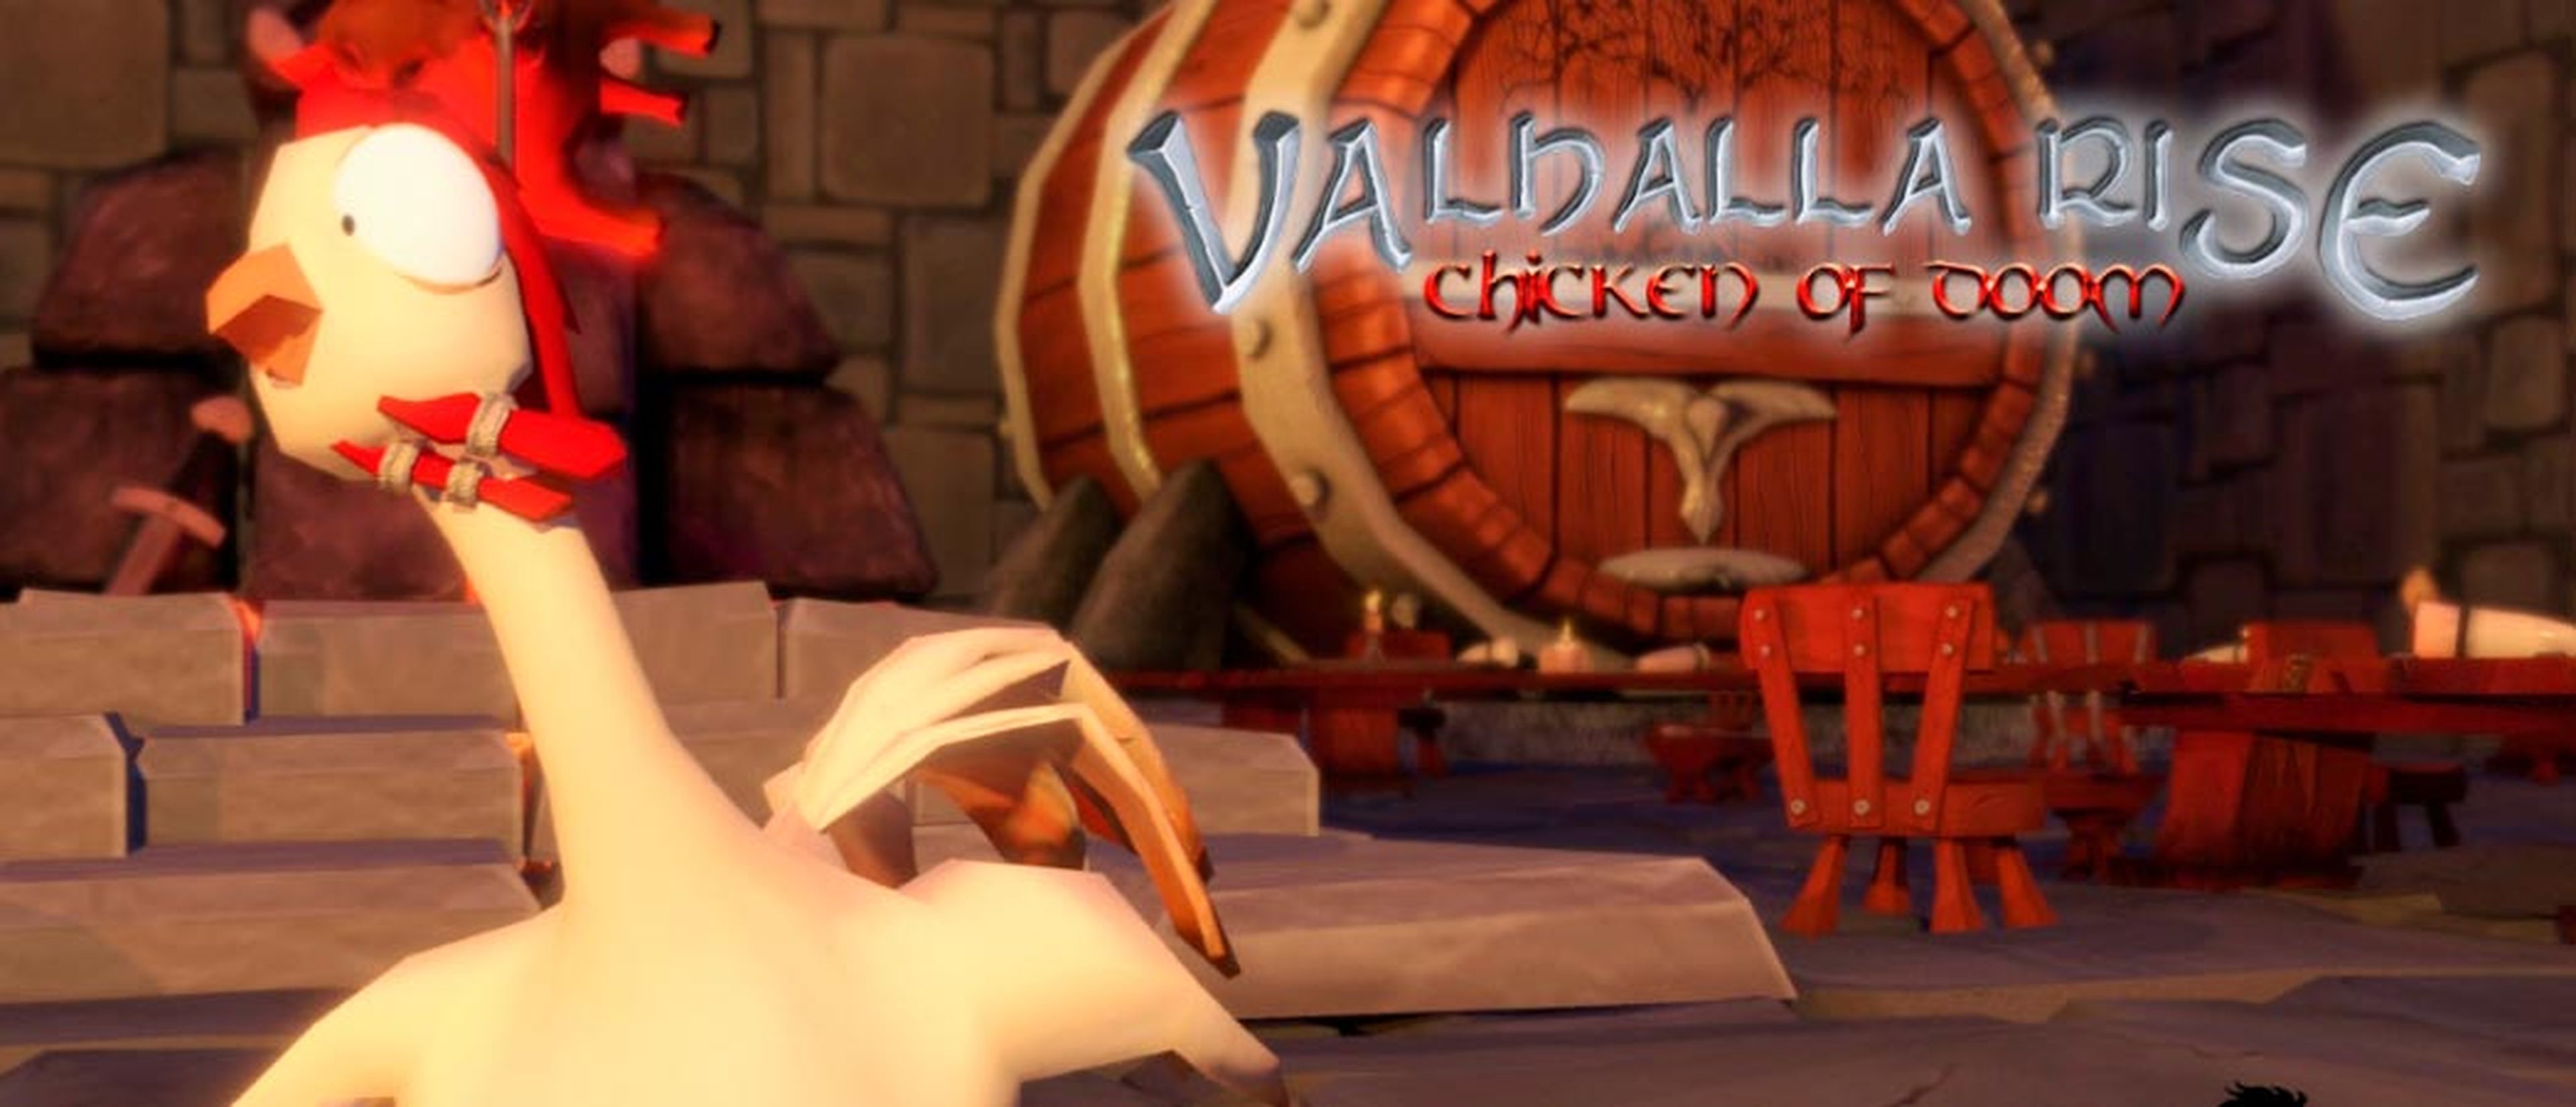 Valhalla Rise: Chicken of Doom 02